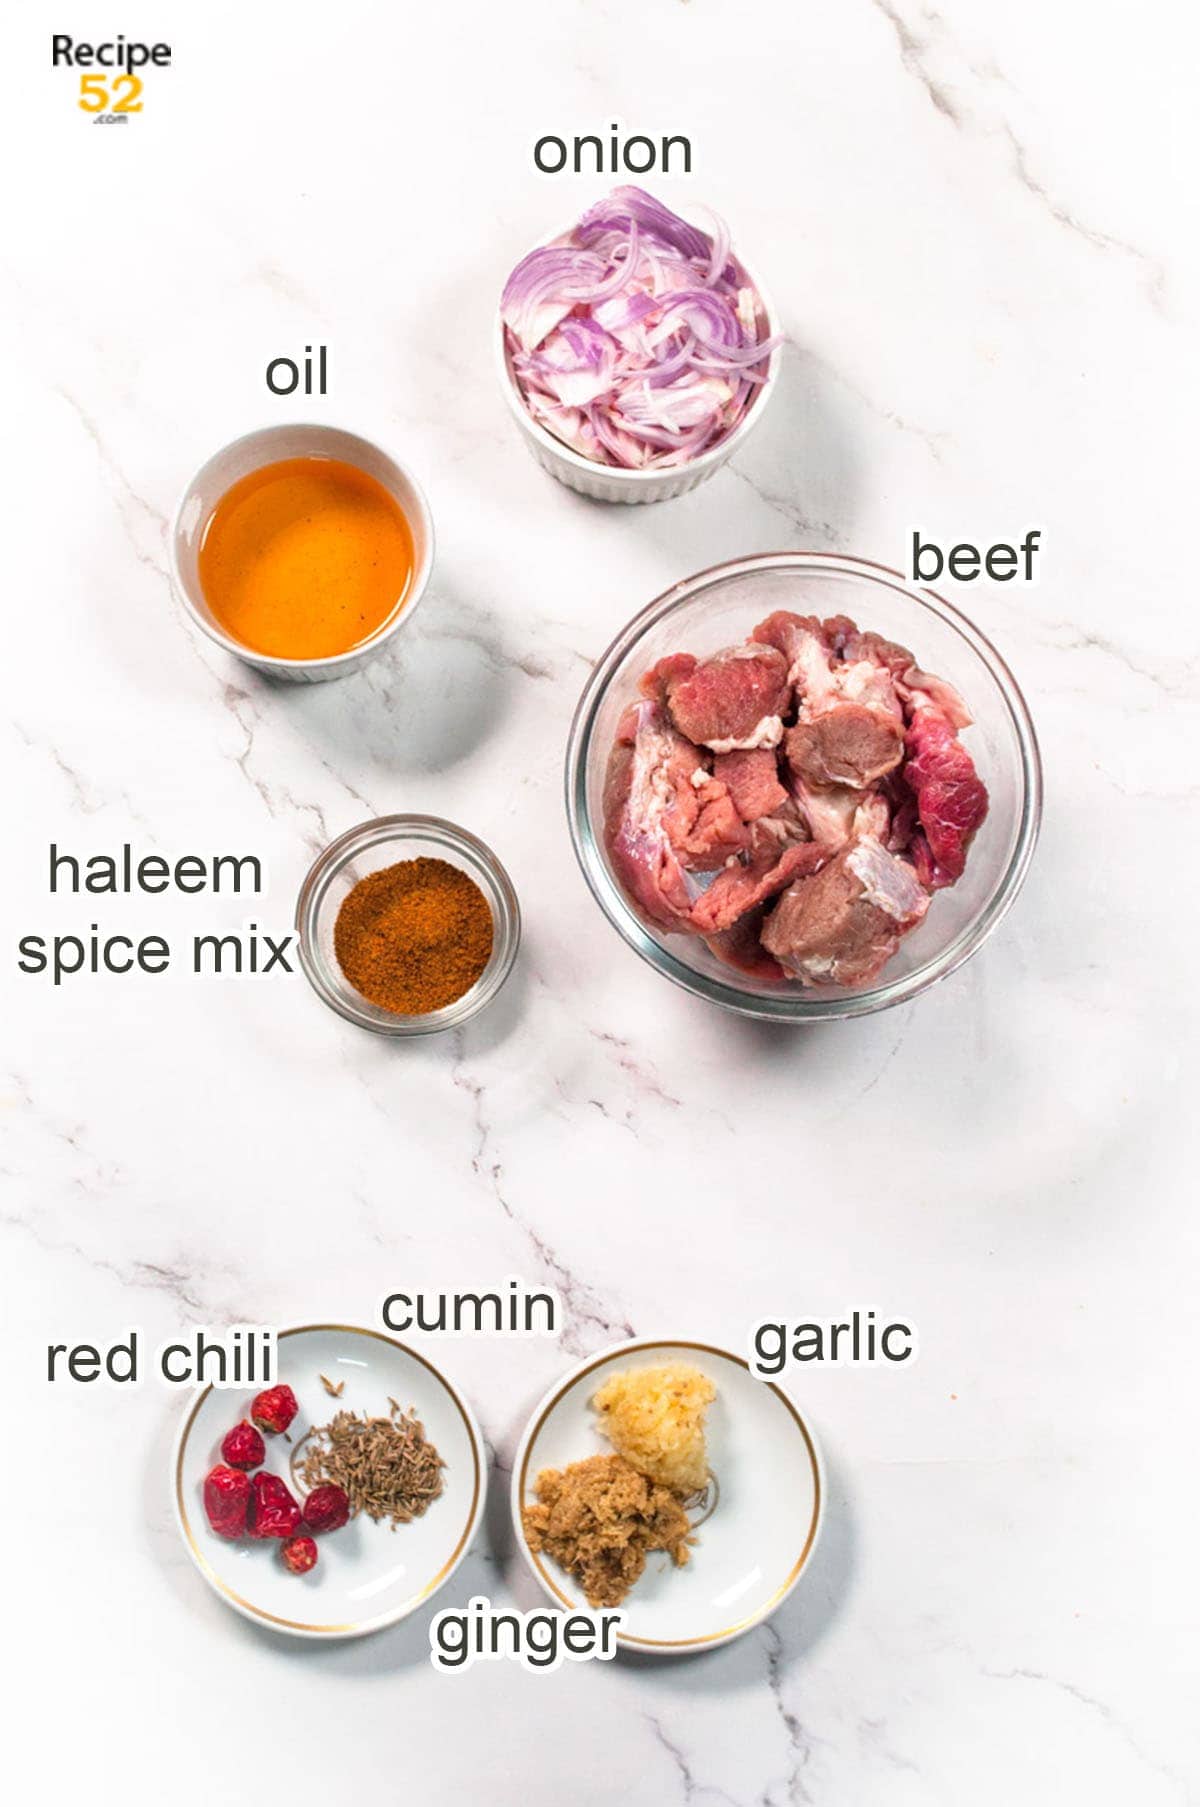 DIsplay of Haleem ingredients.